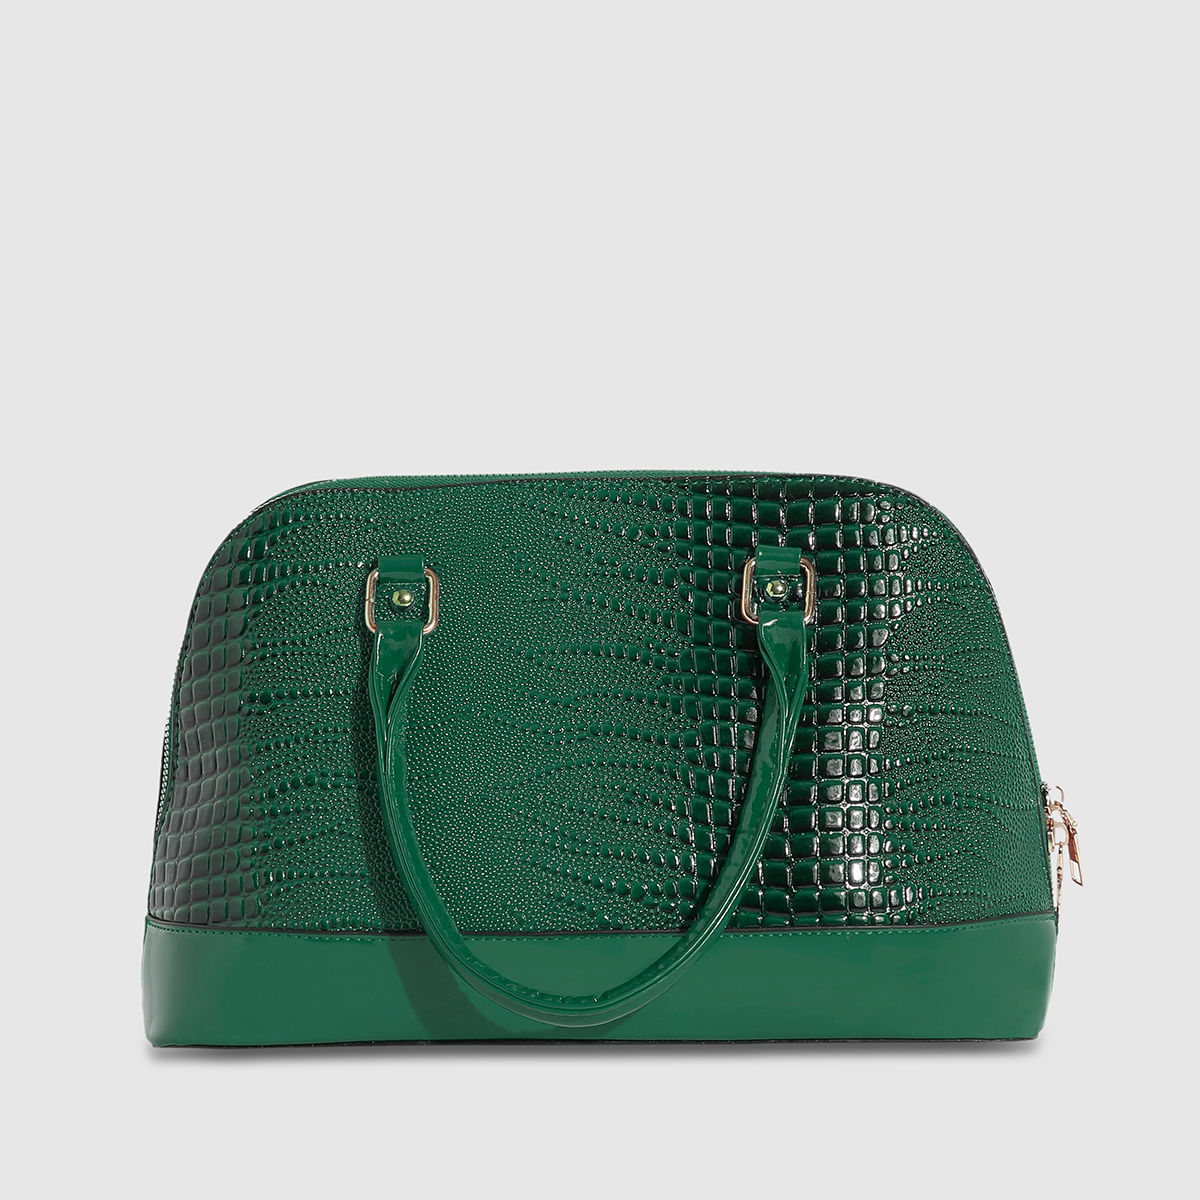 Buy Forever Glam By Pantaloons Women Green Handbag FOREST GREEN Online @  Best Price in India | Flipkart.com